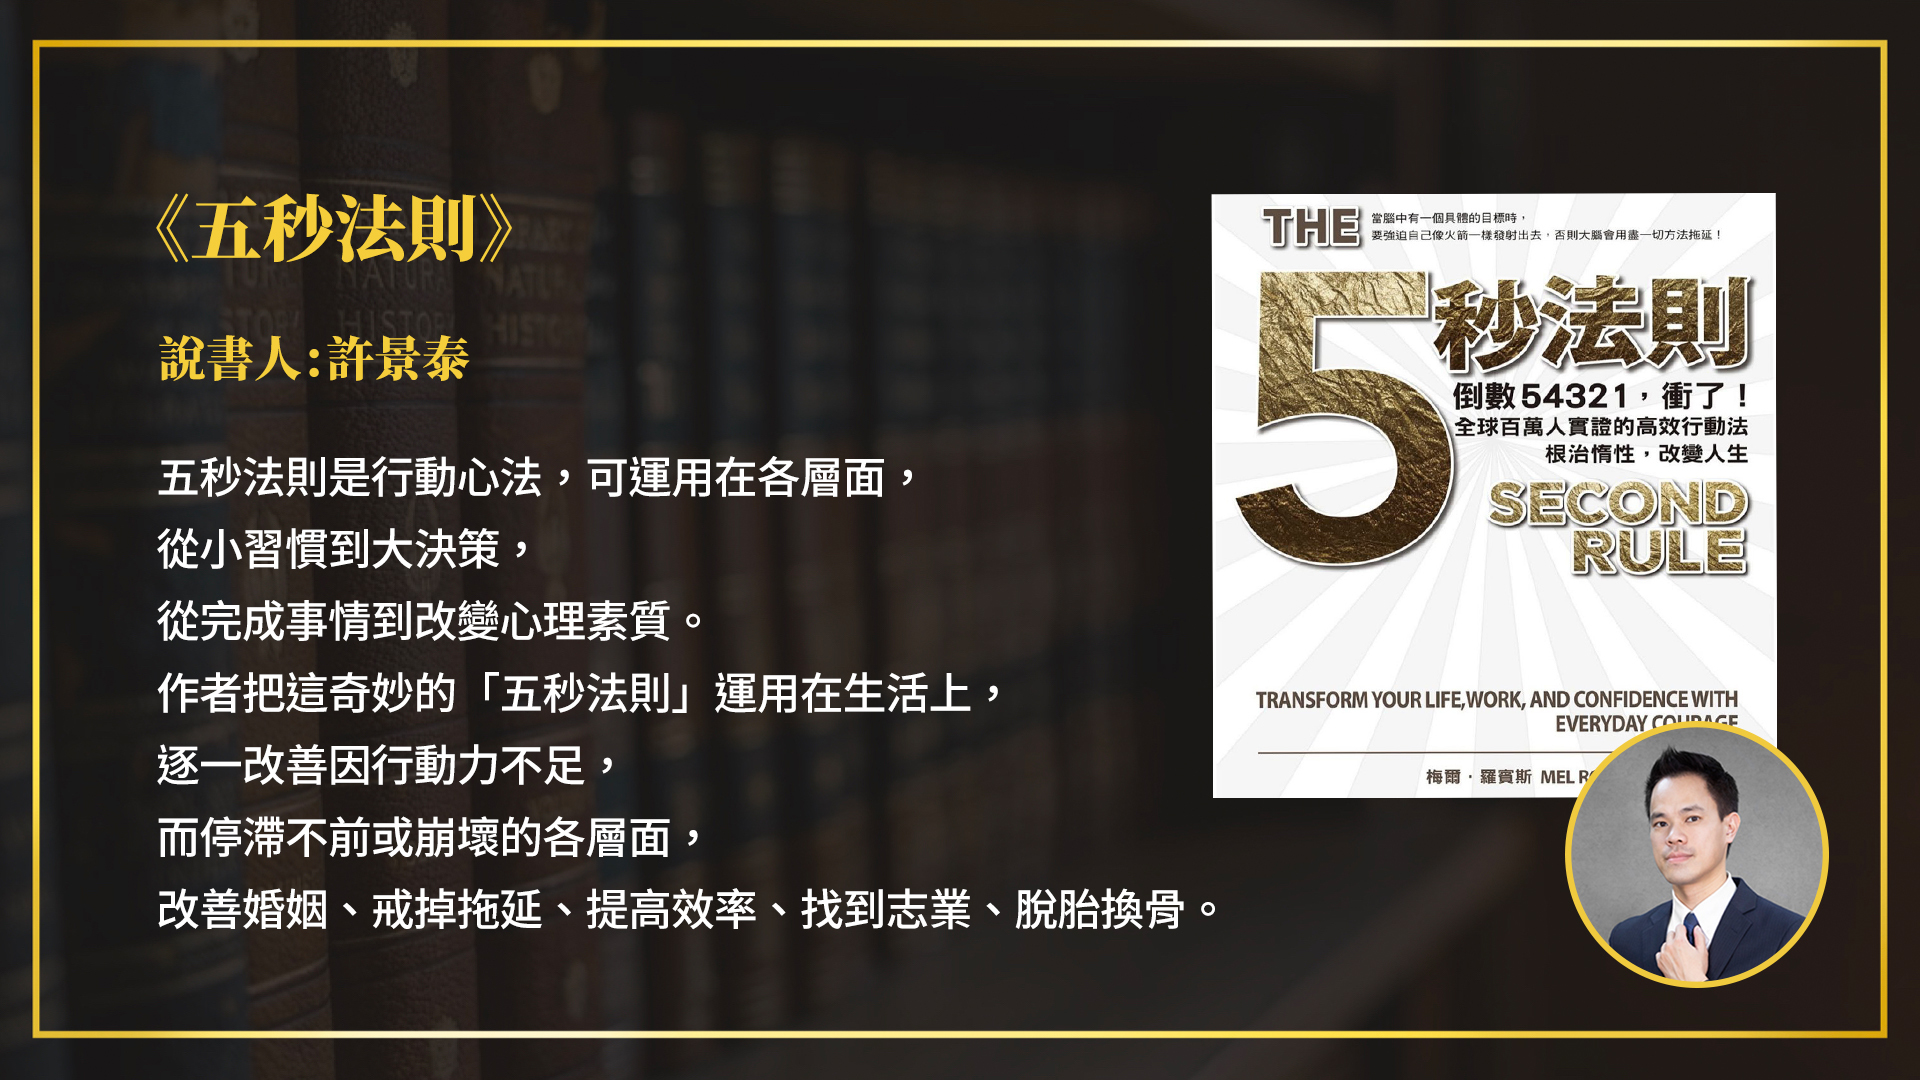 【免費試看】2020年初訂下的閱讀目標，你完成幾本？現在就與「IQ180的台灣天才IT政委」共讀正夯的番茄工作法！